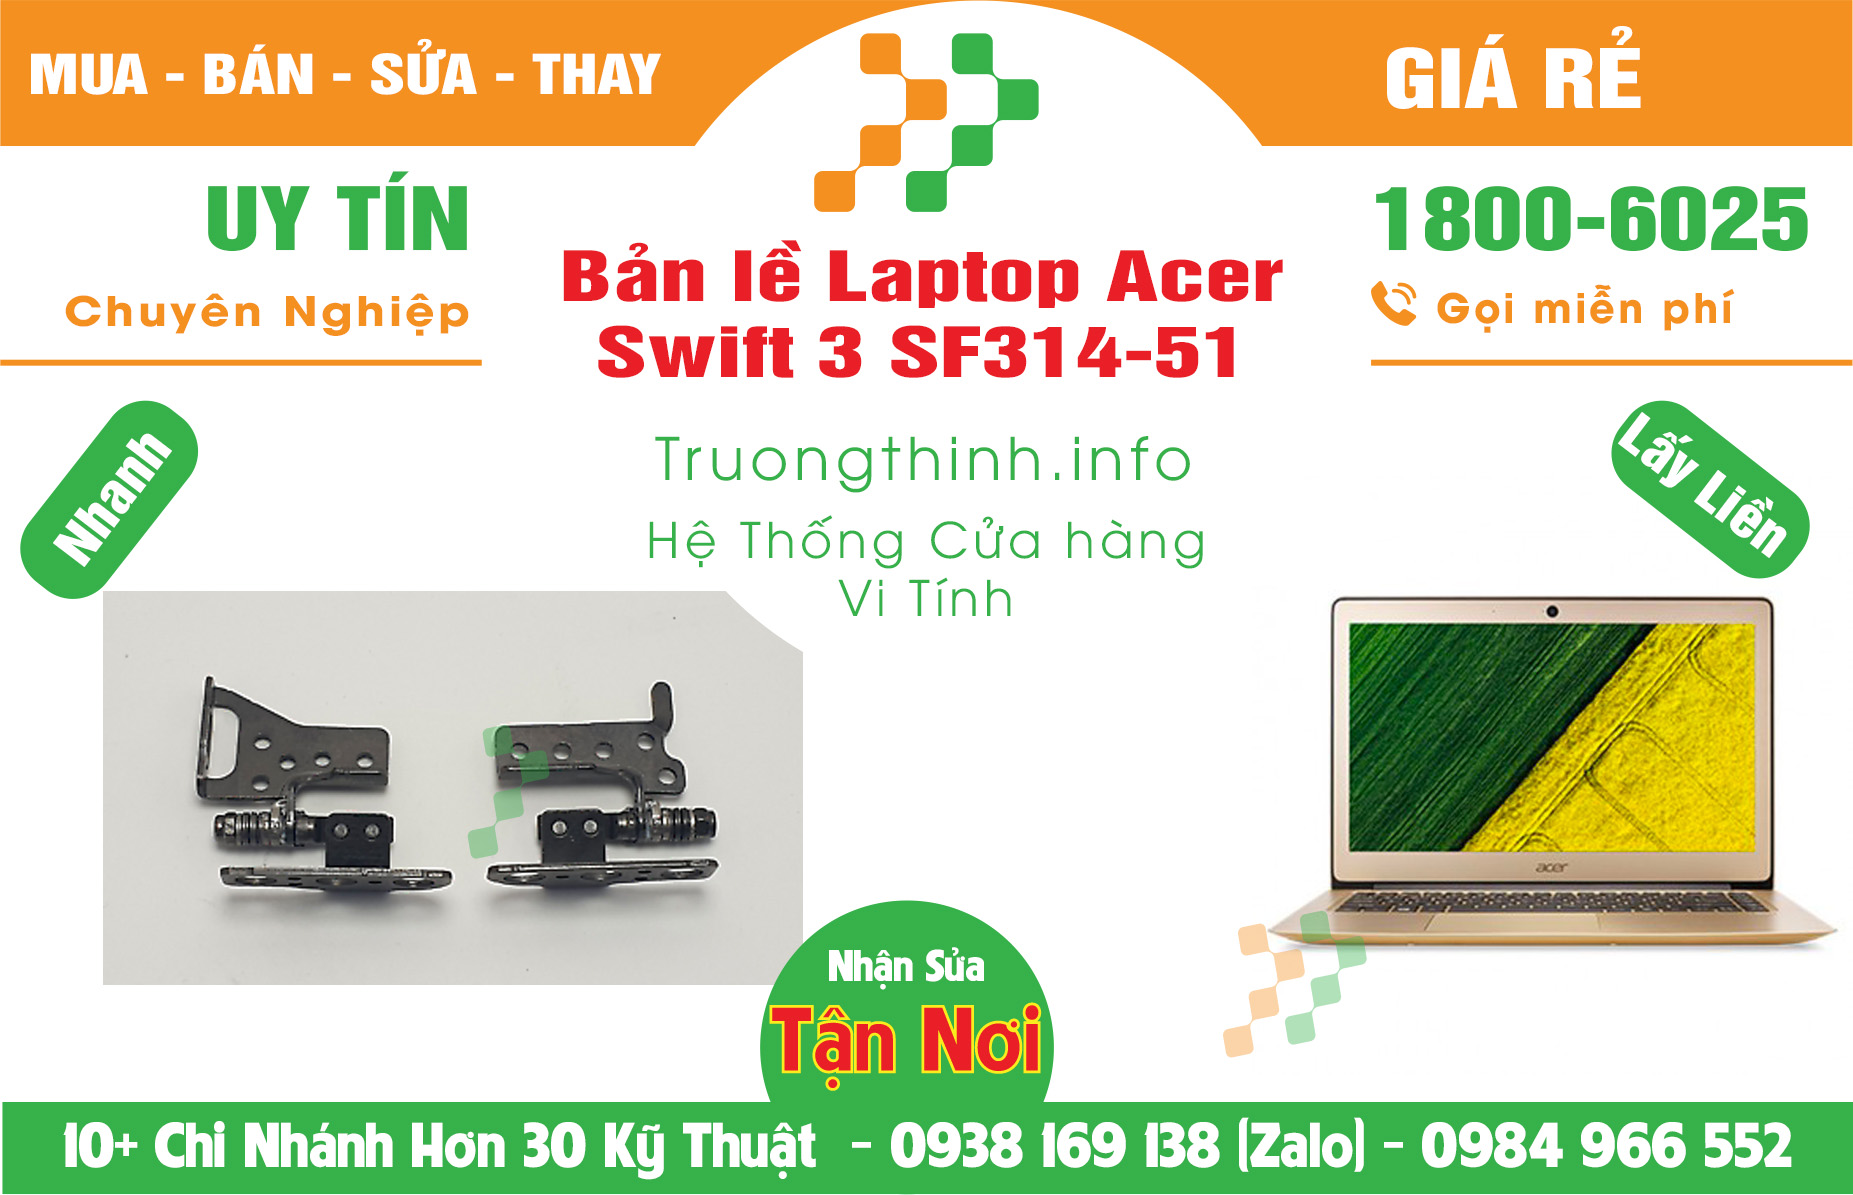 Mua Bán Bản lề Laptop Acer Swift 3 SF314-51 Giá Rẻ | Máy Tính Trường Thịnh Giá Rẻ